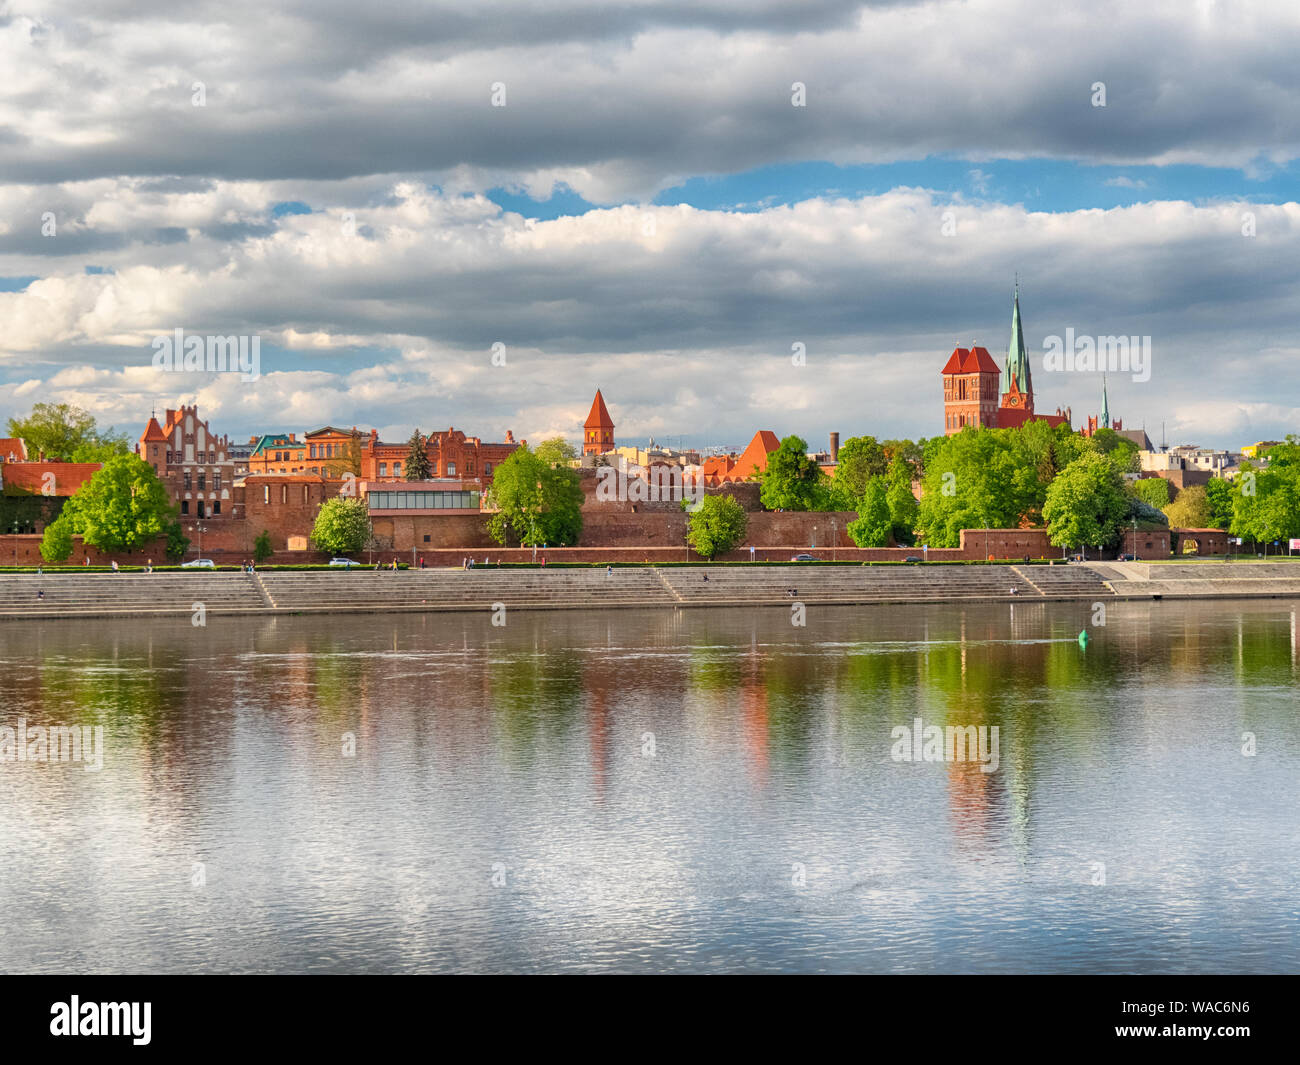 Vue panoramique de la vieille ville de Torun, Pologne Banque D'Images